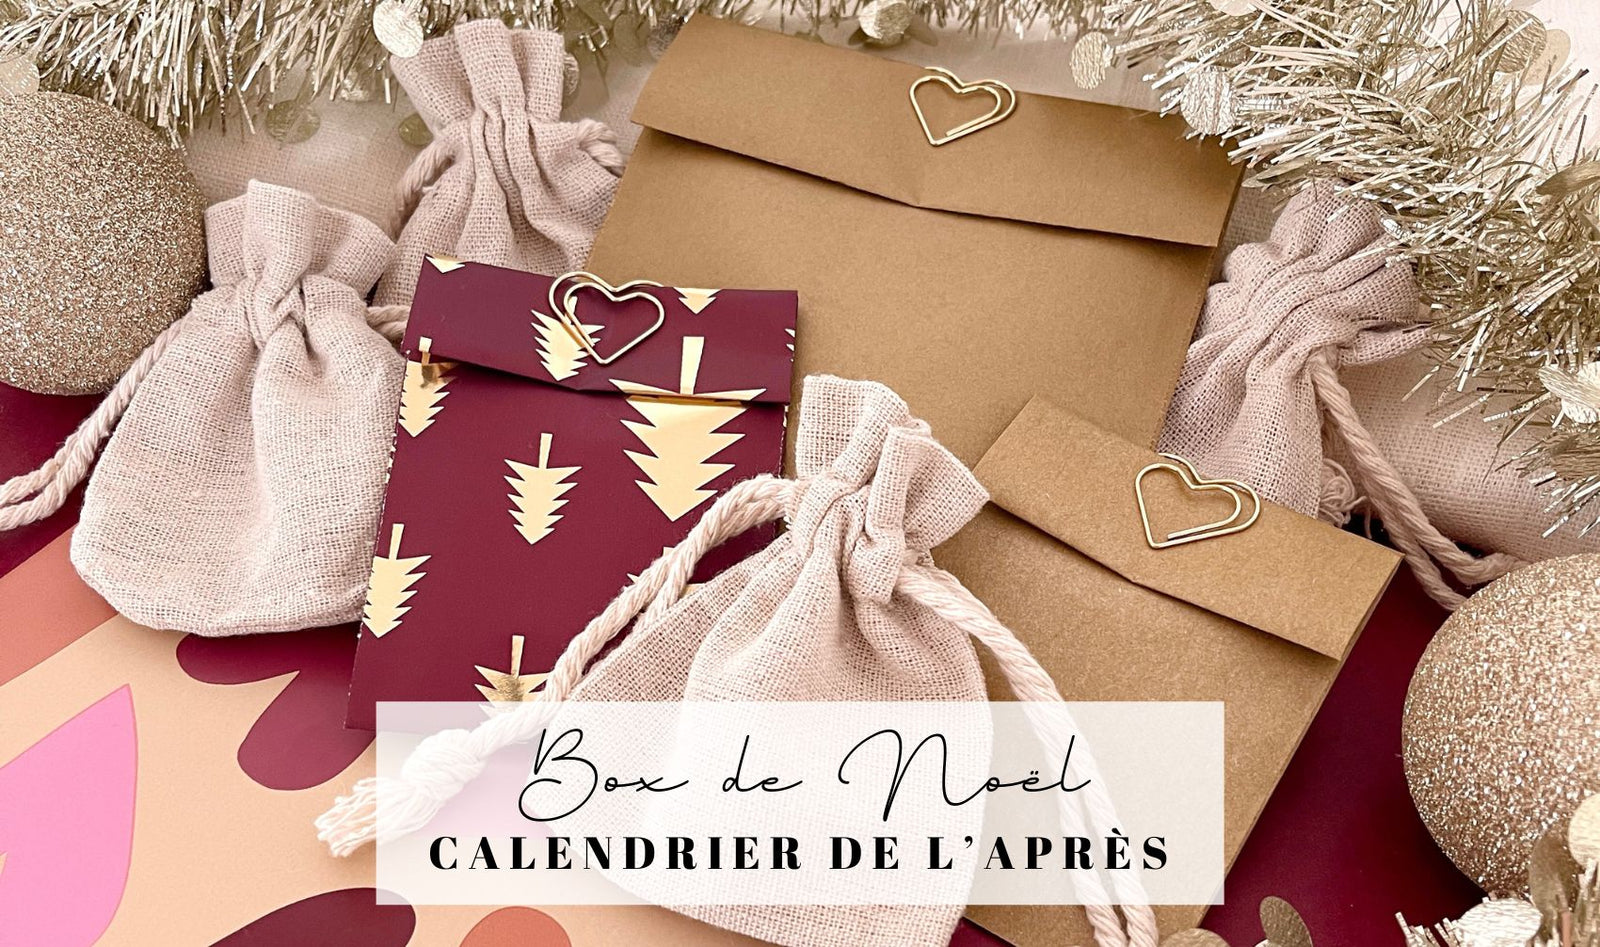 Notre box de Noël est une jolie alternative du calendrier de l'après bijoux, le cadeau parfait à glisser au pied du sapin !